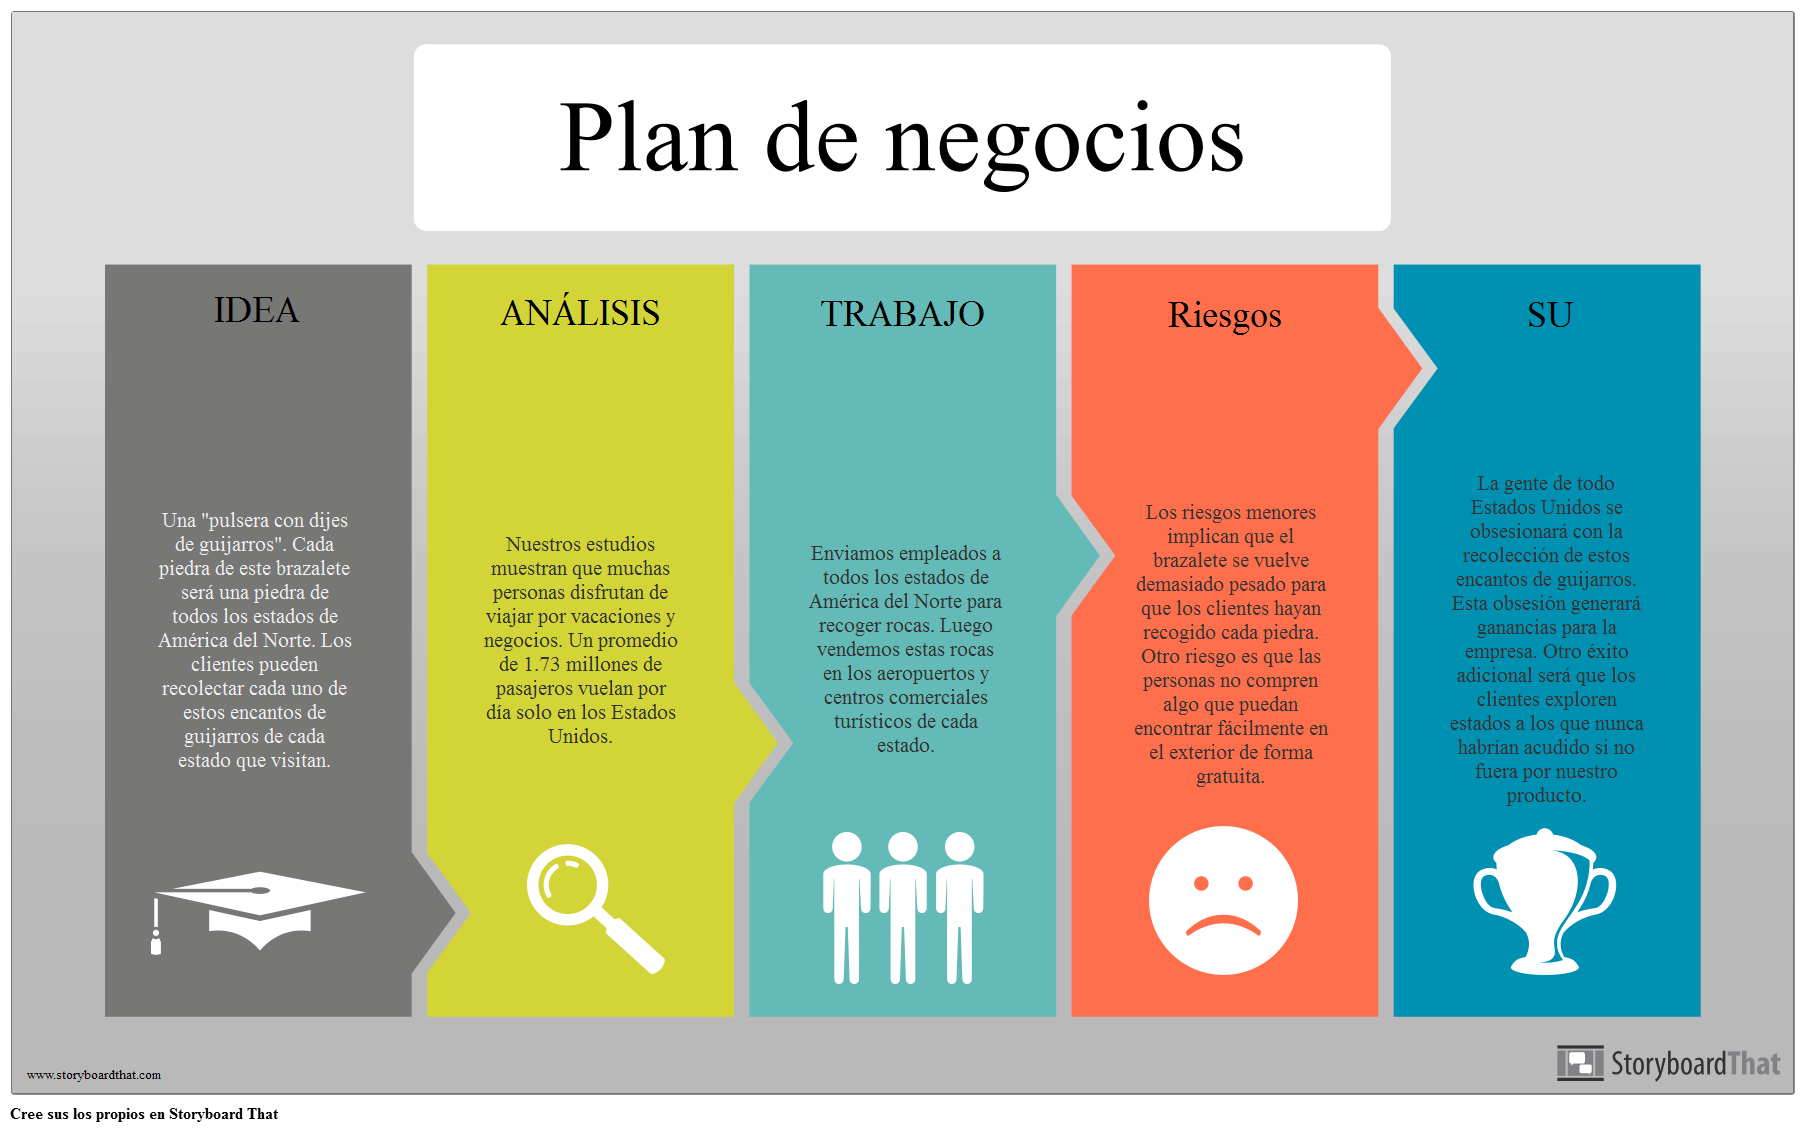 Como Elaborar Un Plan De Negocios Exitoso Infografia Images